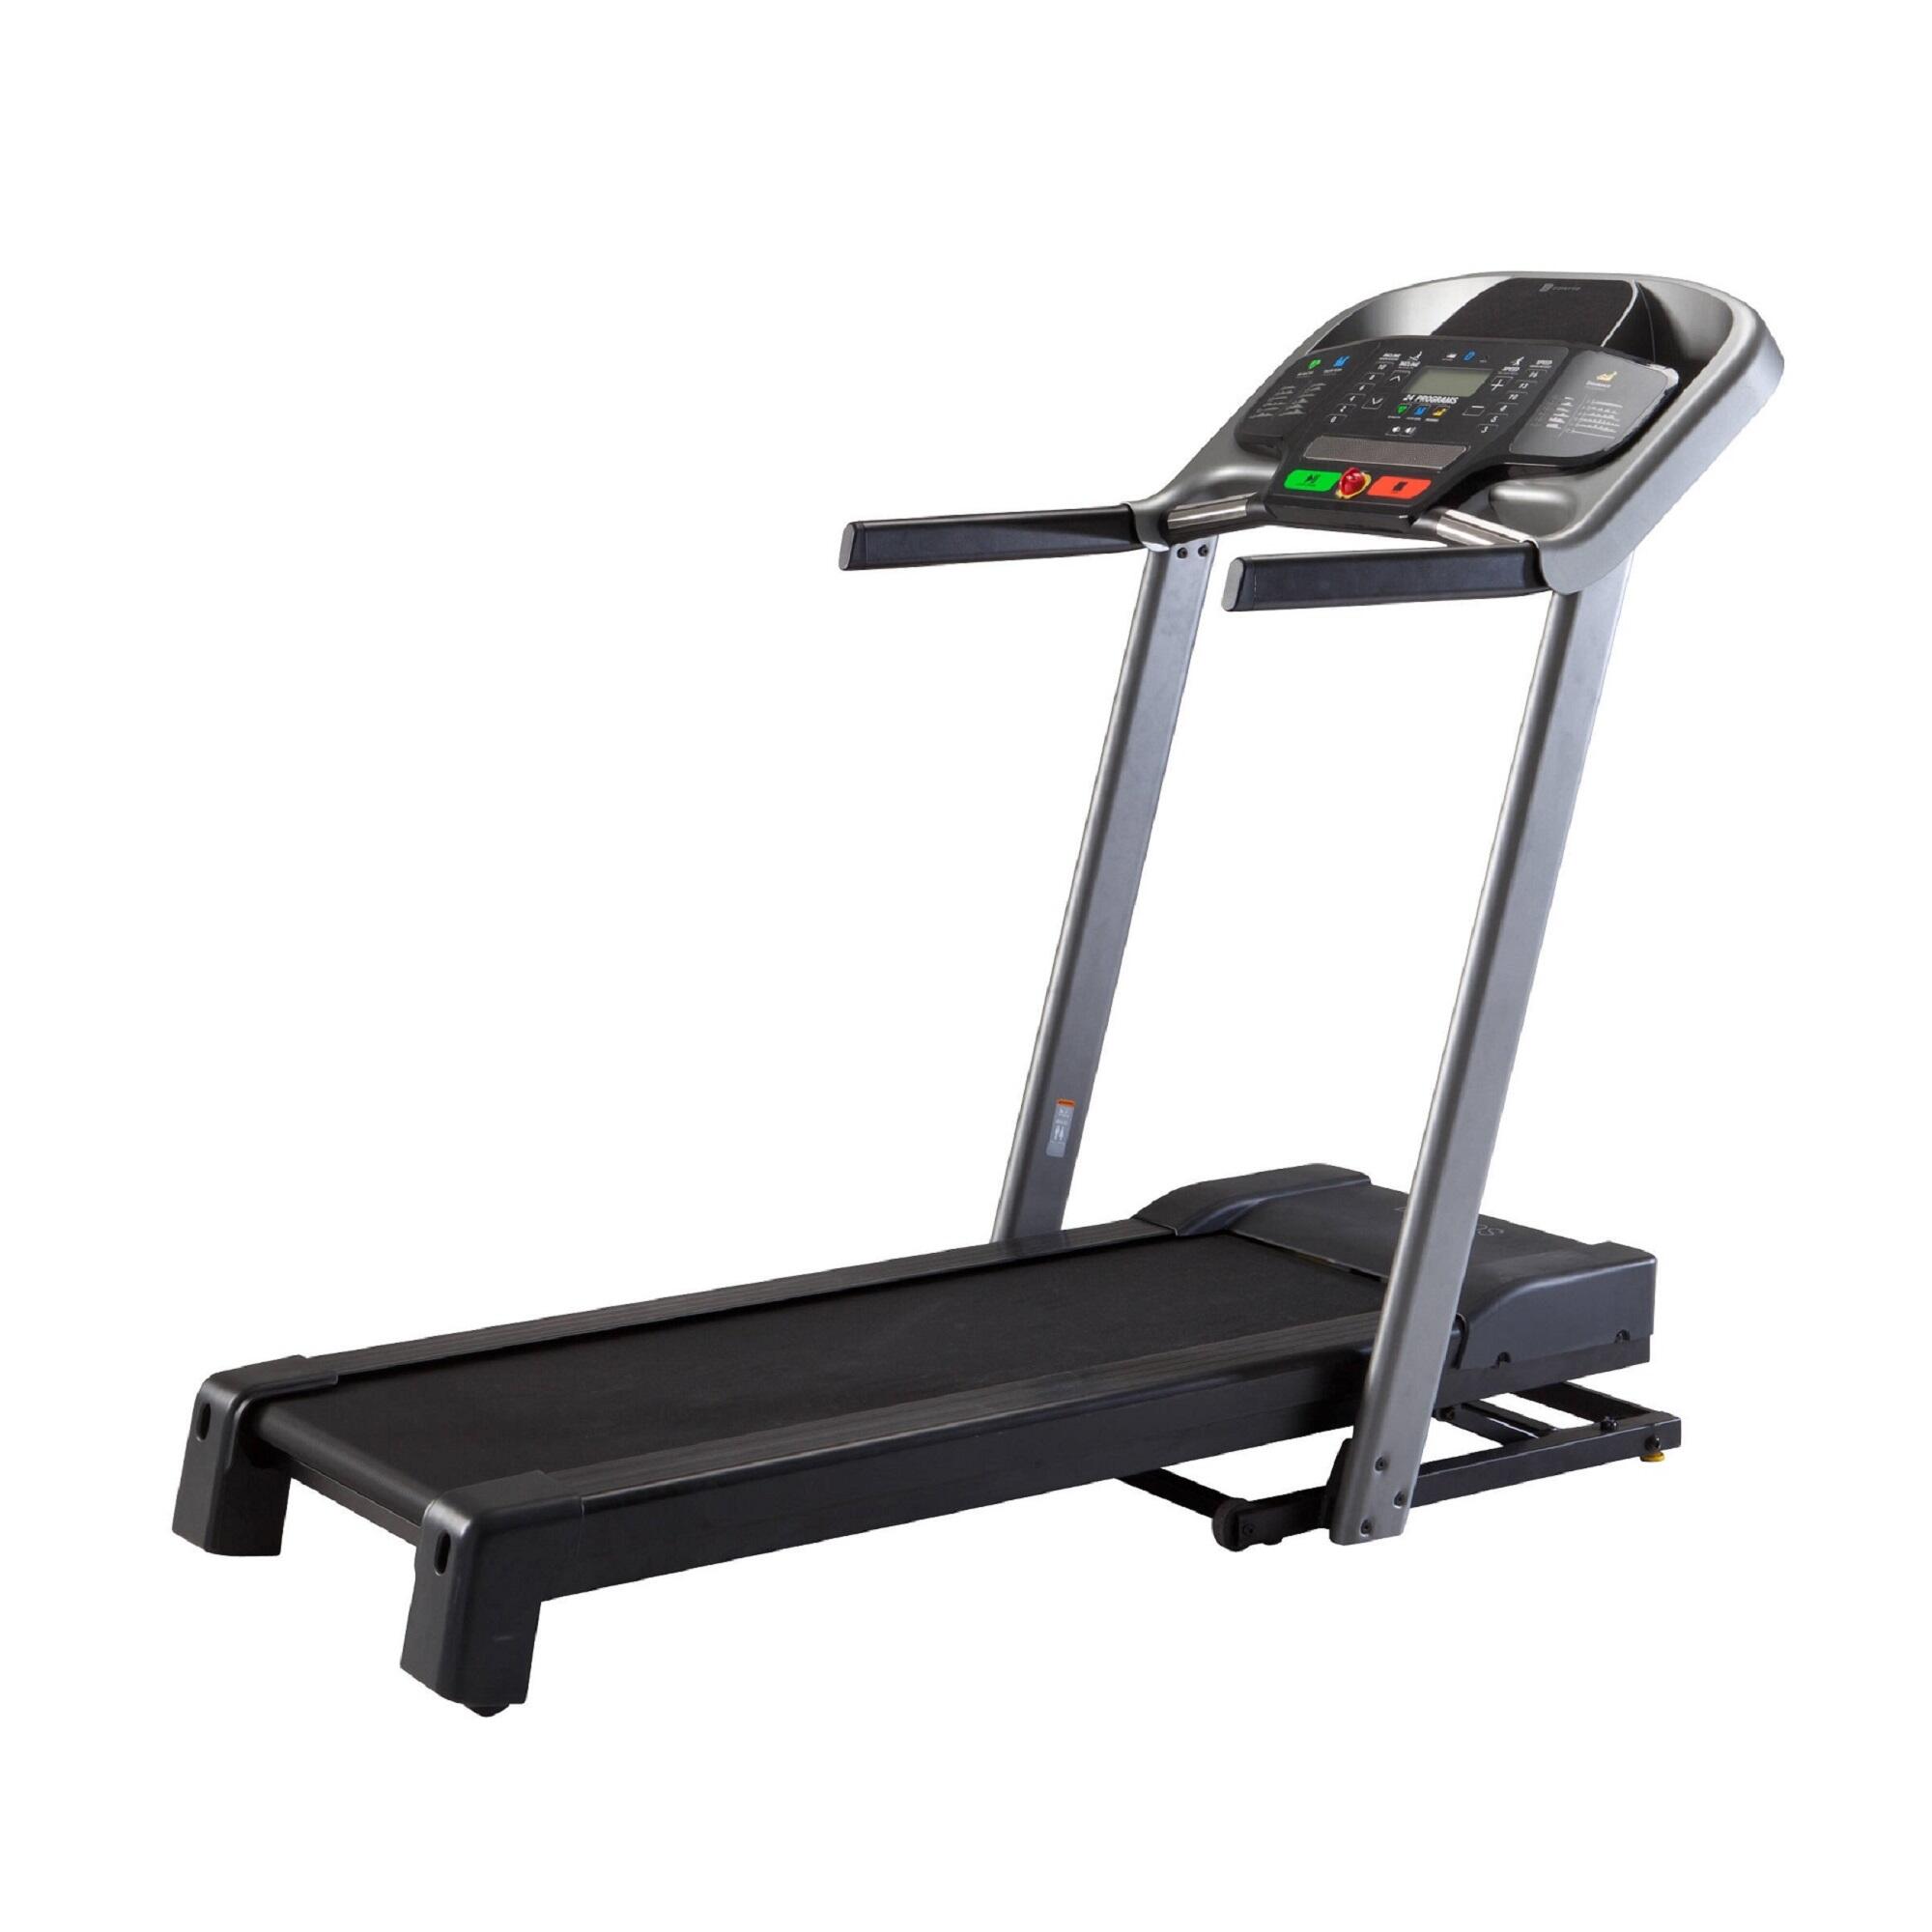 T540A IN Treadmill | Domyos by Decathlon